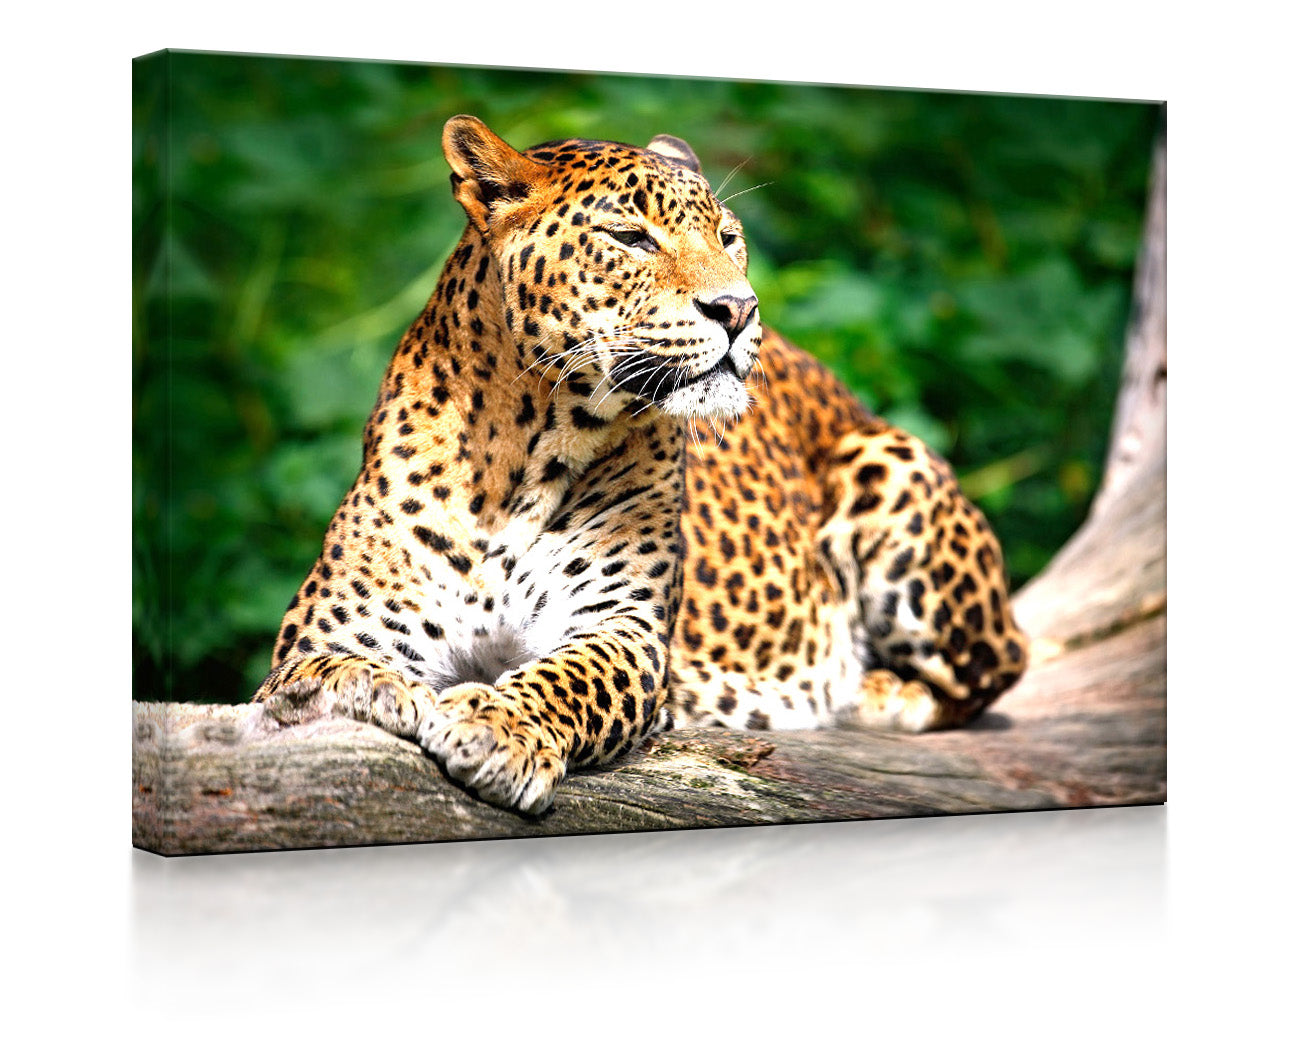 Leopard in der Natur als leuchtbild